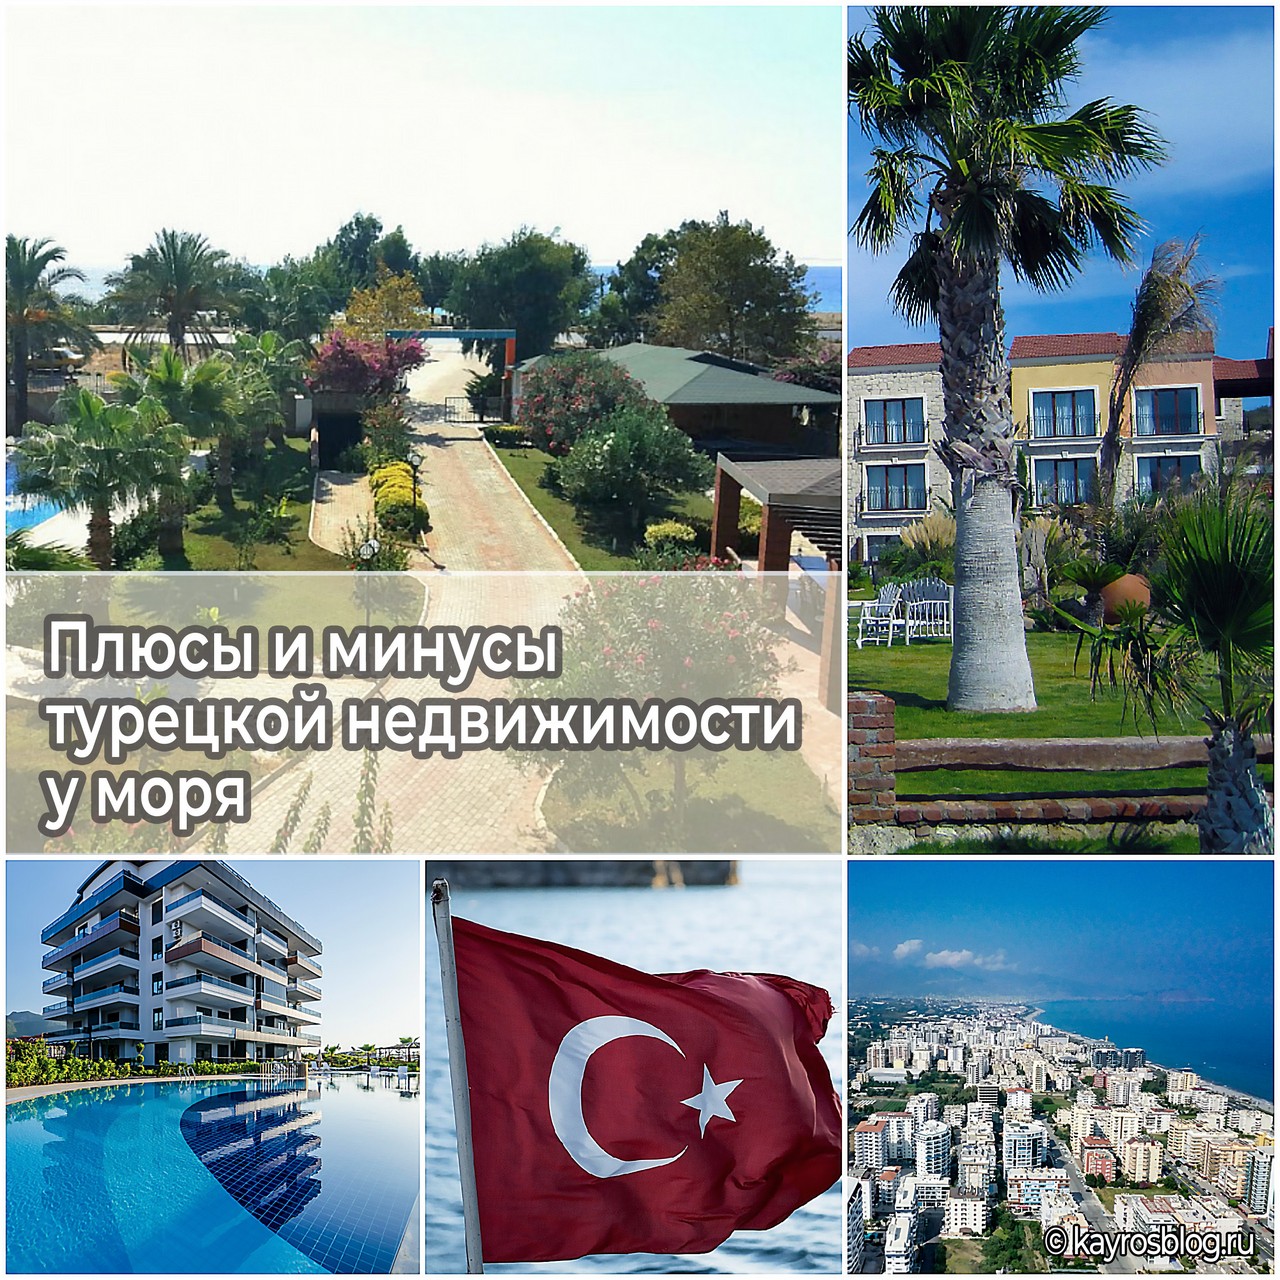 Плюсы и минусы турецкой недвижимости у моря